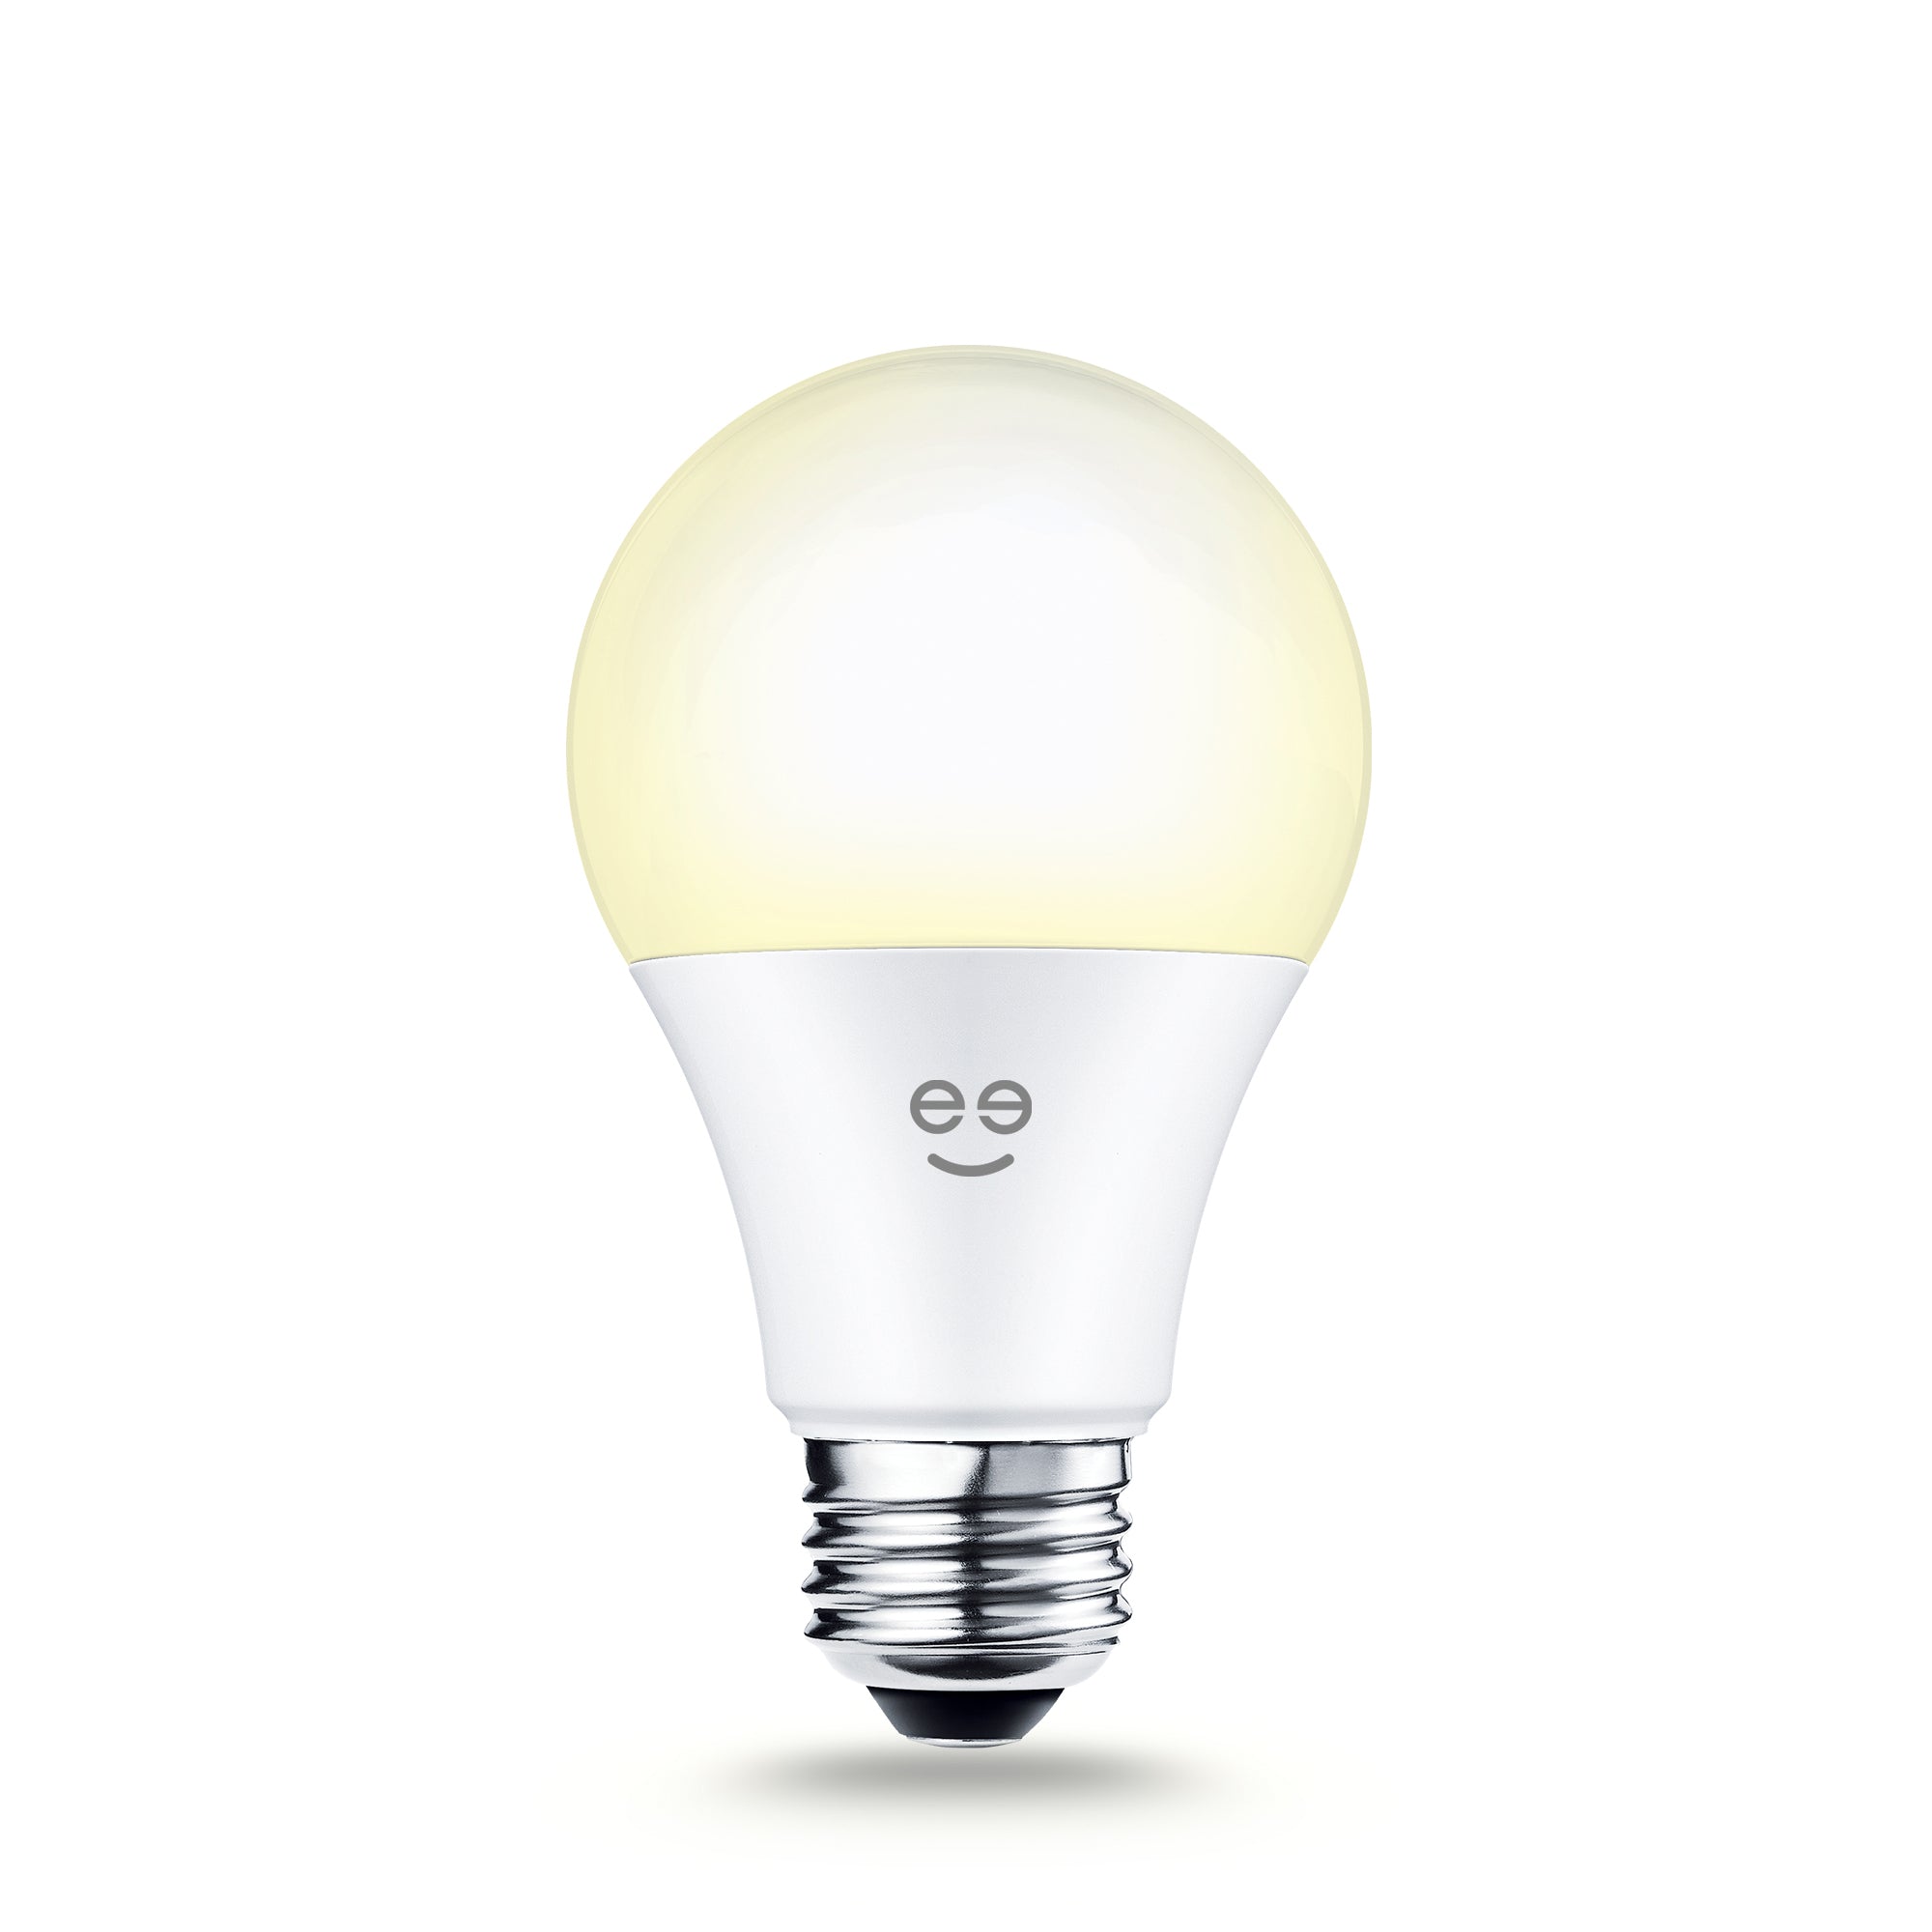 Tilbageholdelse ser godt ud boksning Geeni LUX 800 Warm White A19 E26 Smart LED Bulb – Geeni Smarthome